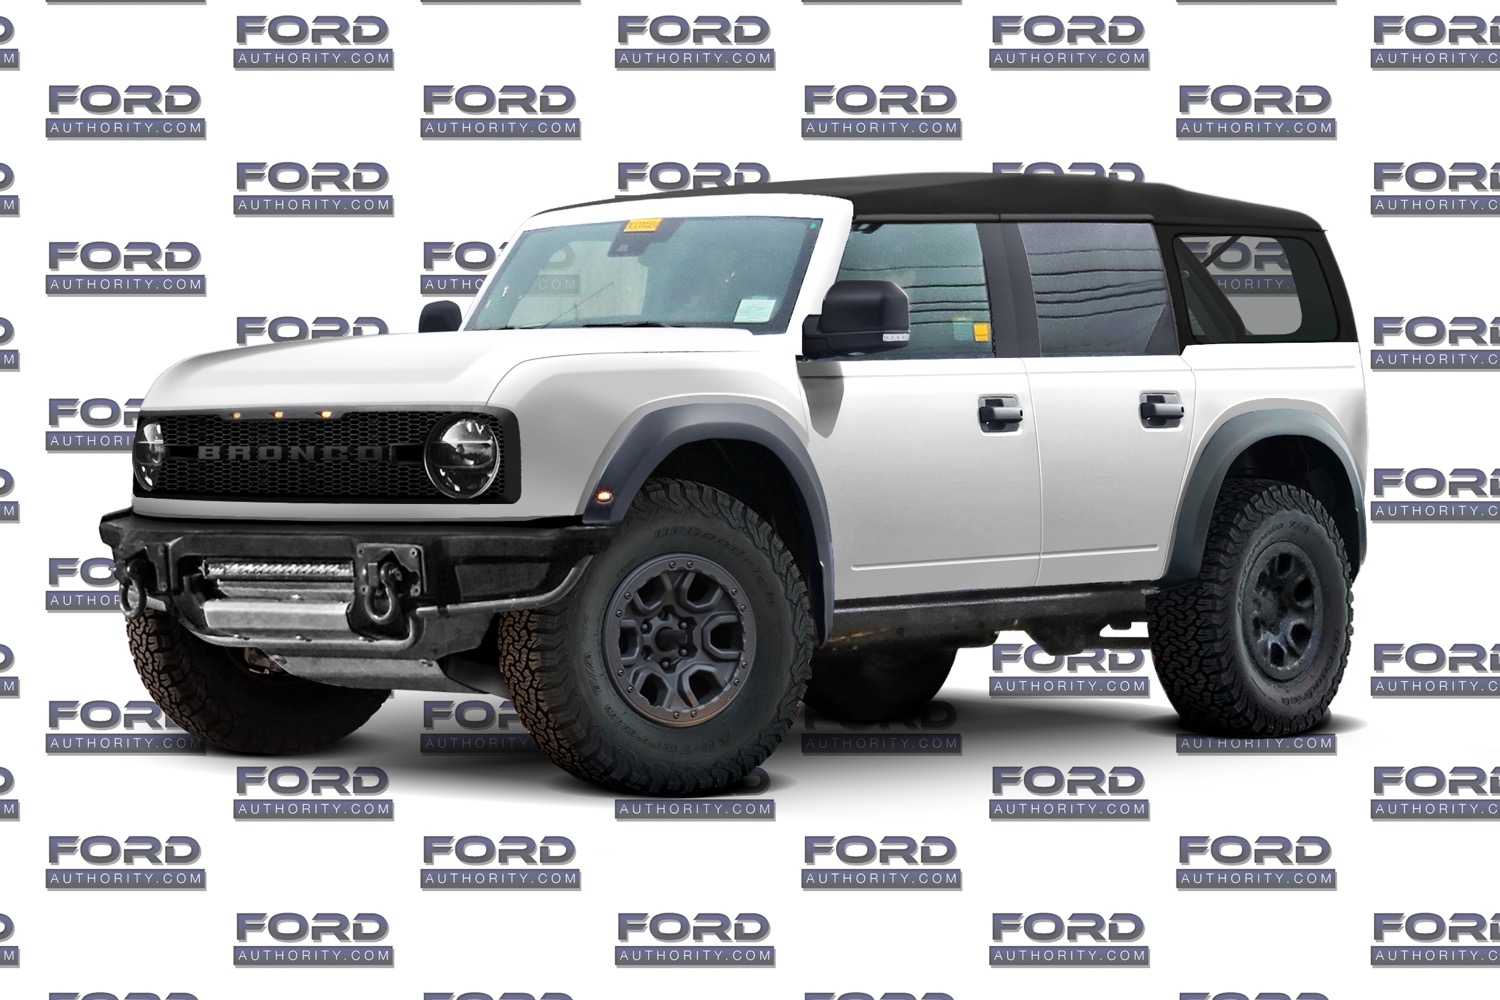 Ford Bronco 2021 Ford Bronco 2-door convertible rendering 99427570_165324741635789_1345951250583126016_n